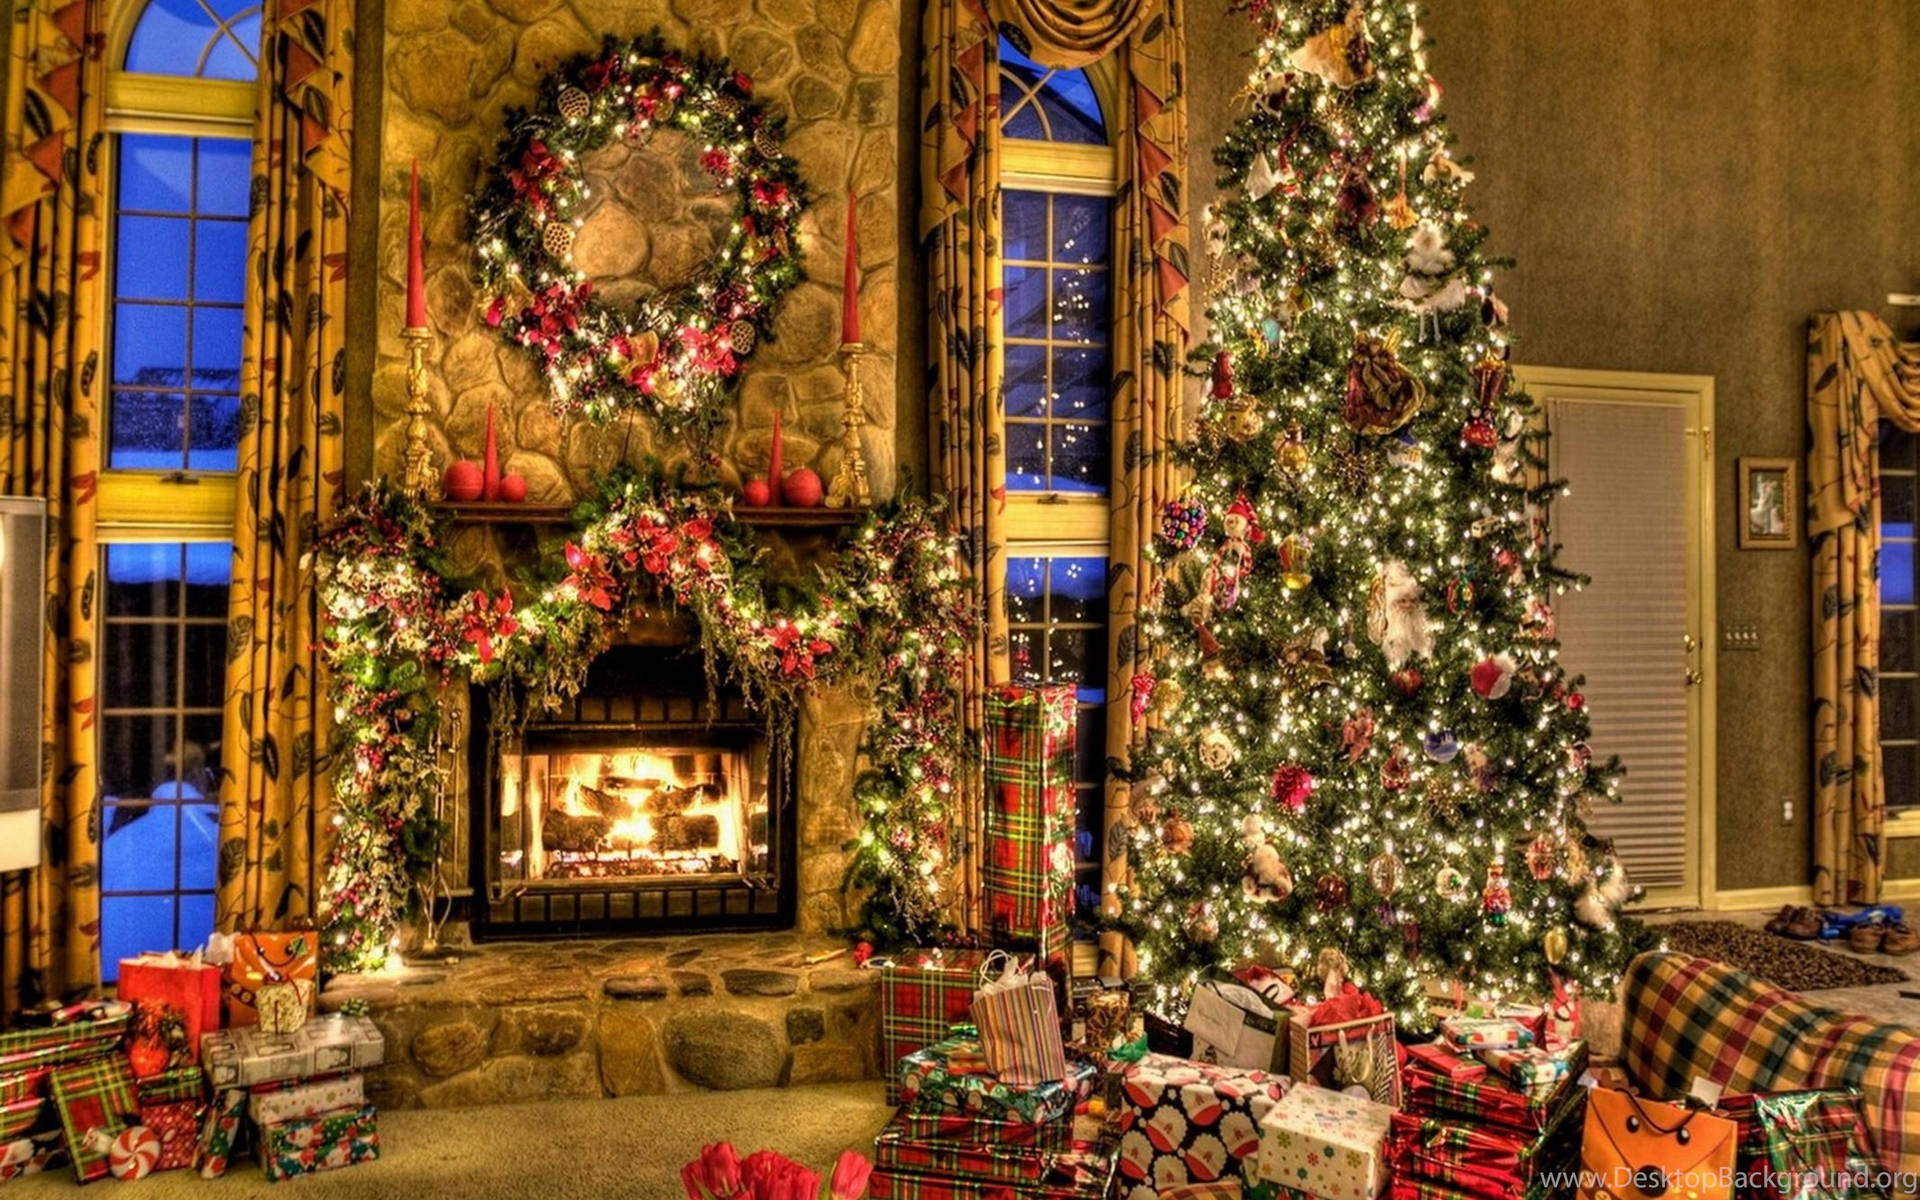 Hãy dùng hình nền Giáng Sinh trên màn hình của bạn để đón một mùa lễ hội ấm áp và đầy niềm vui. Chỉ cần nhìn vào hình nền Giáng sinh, bạn sẽ ngay lập tức cảm thấy những bầu không khí lễ hội đang đến gần. Hãy đến và xem ngay những hình ảnh tuyệt đẹp về hình nền Giáng sinh.